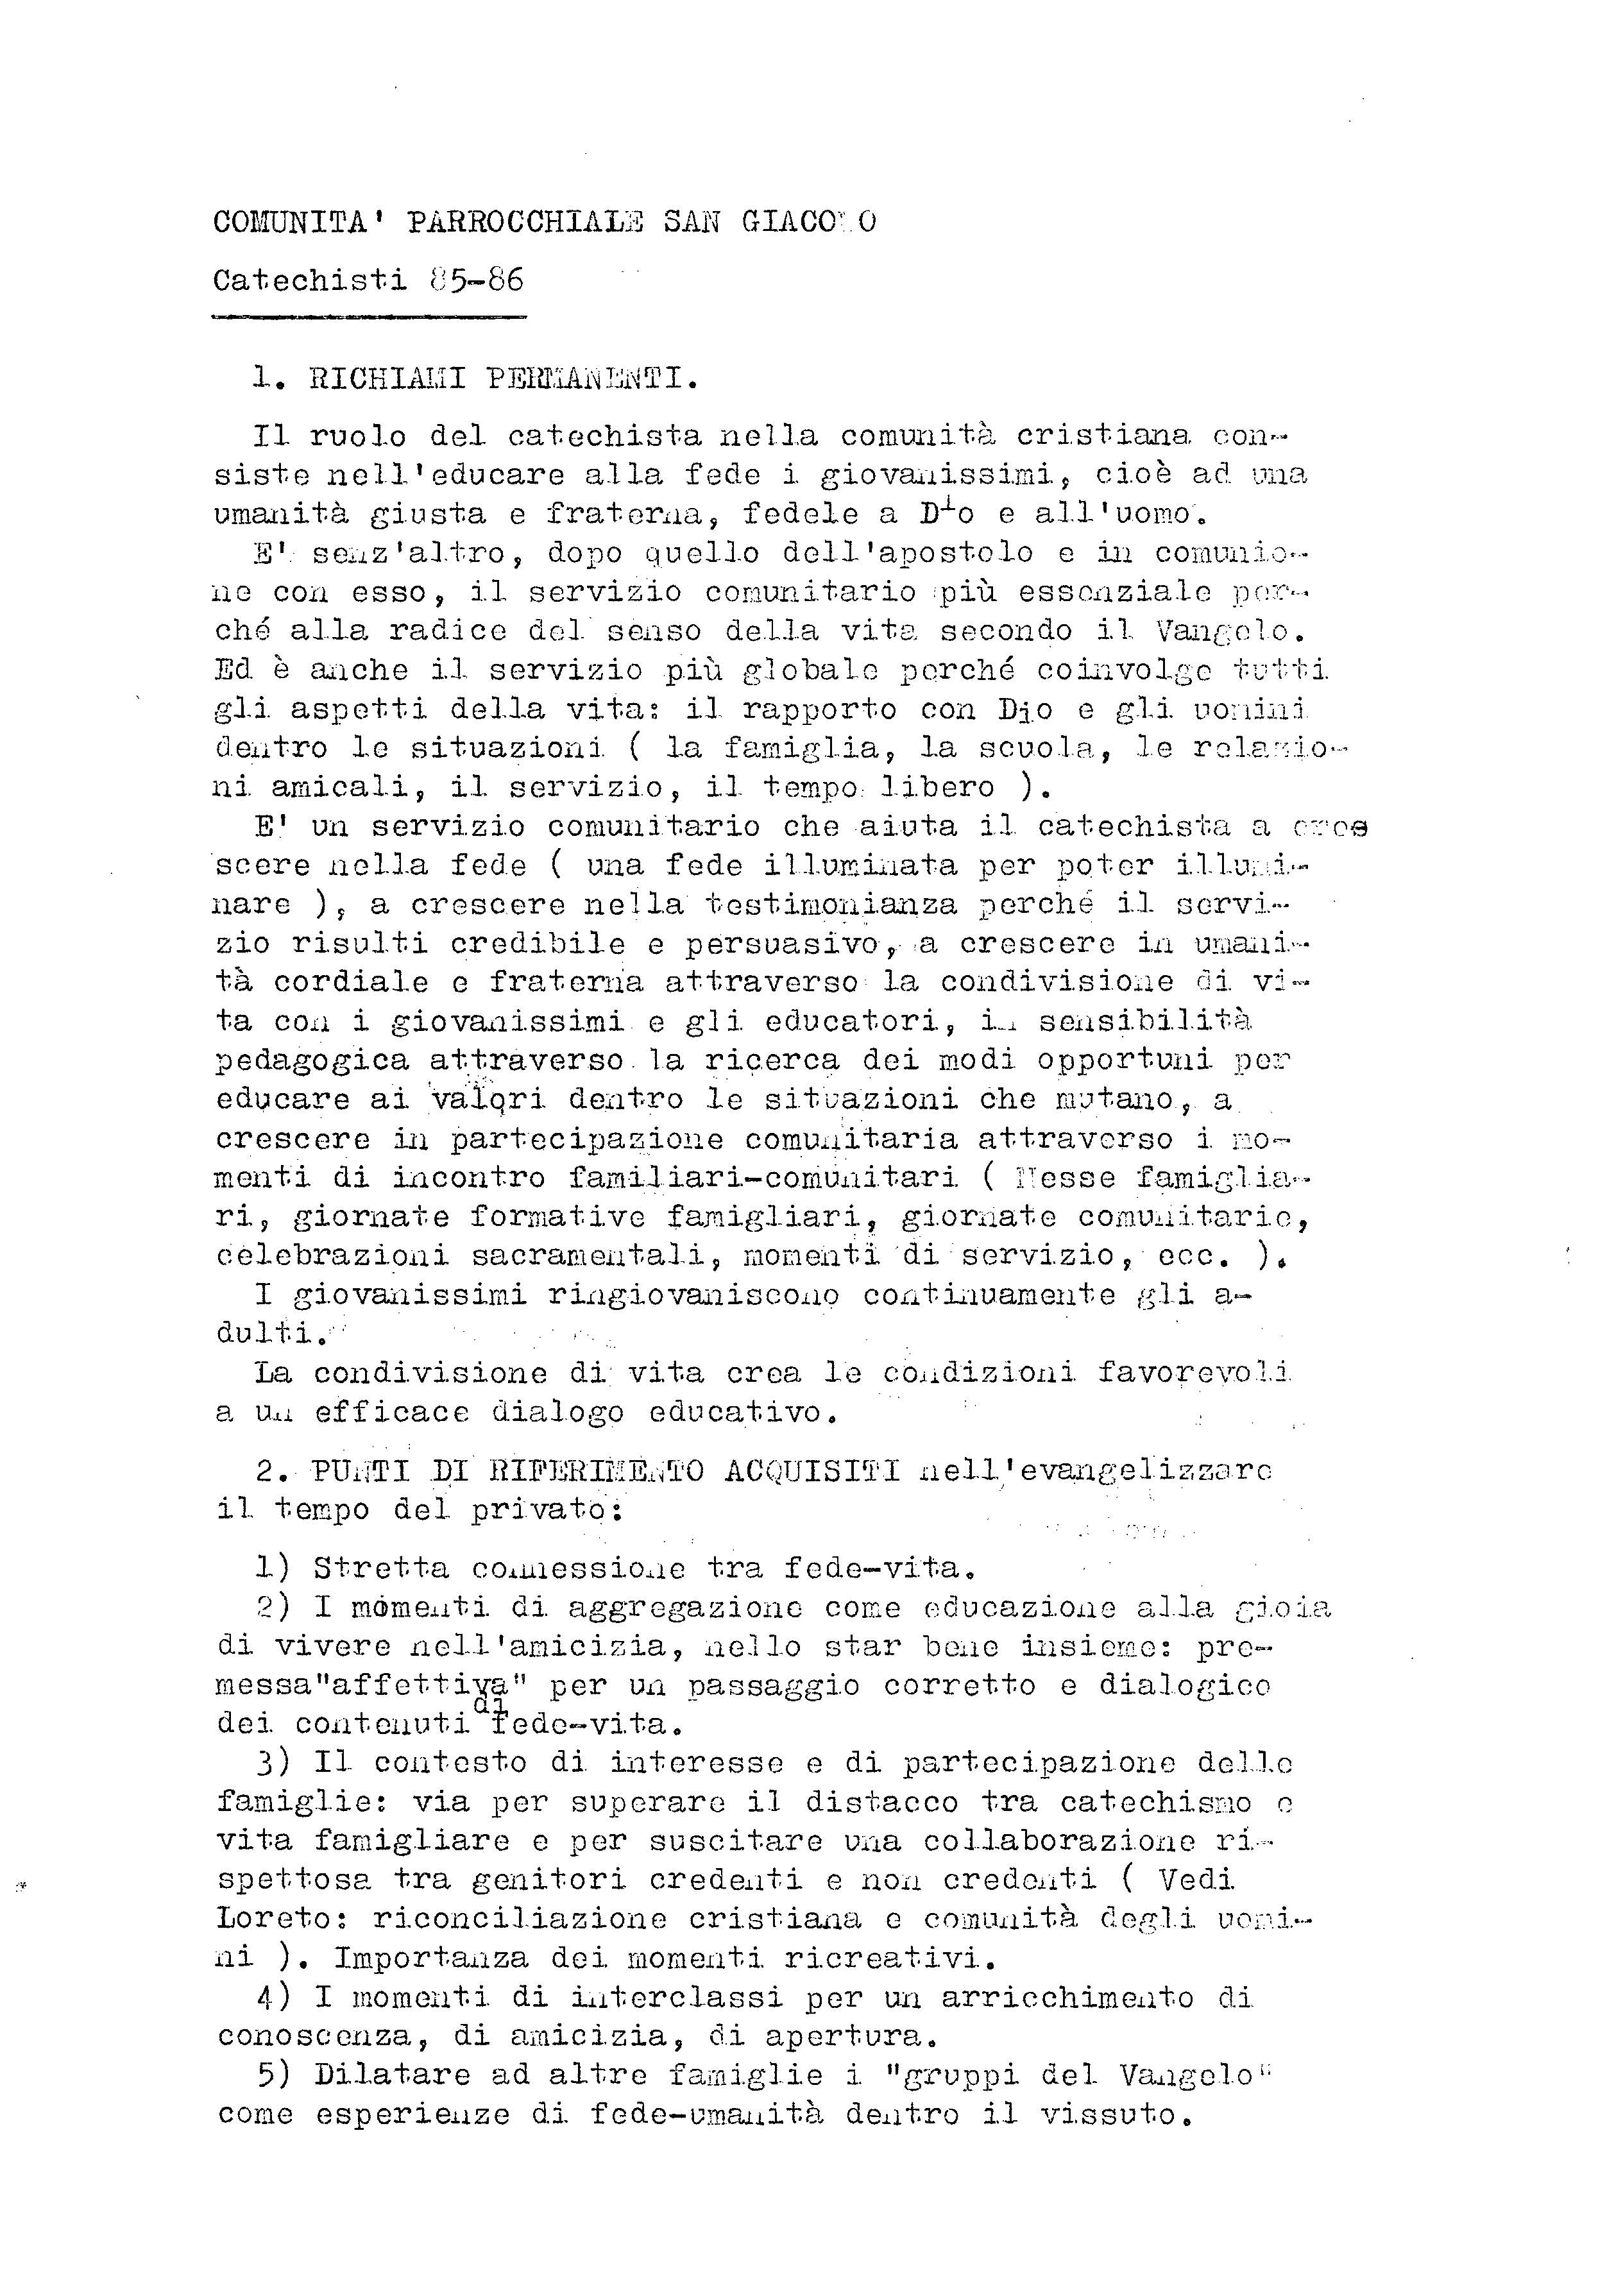 Incontro_Catechisti_1985_86.pdf